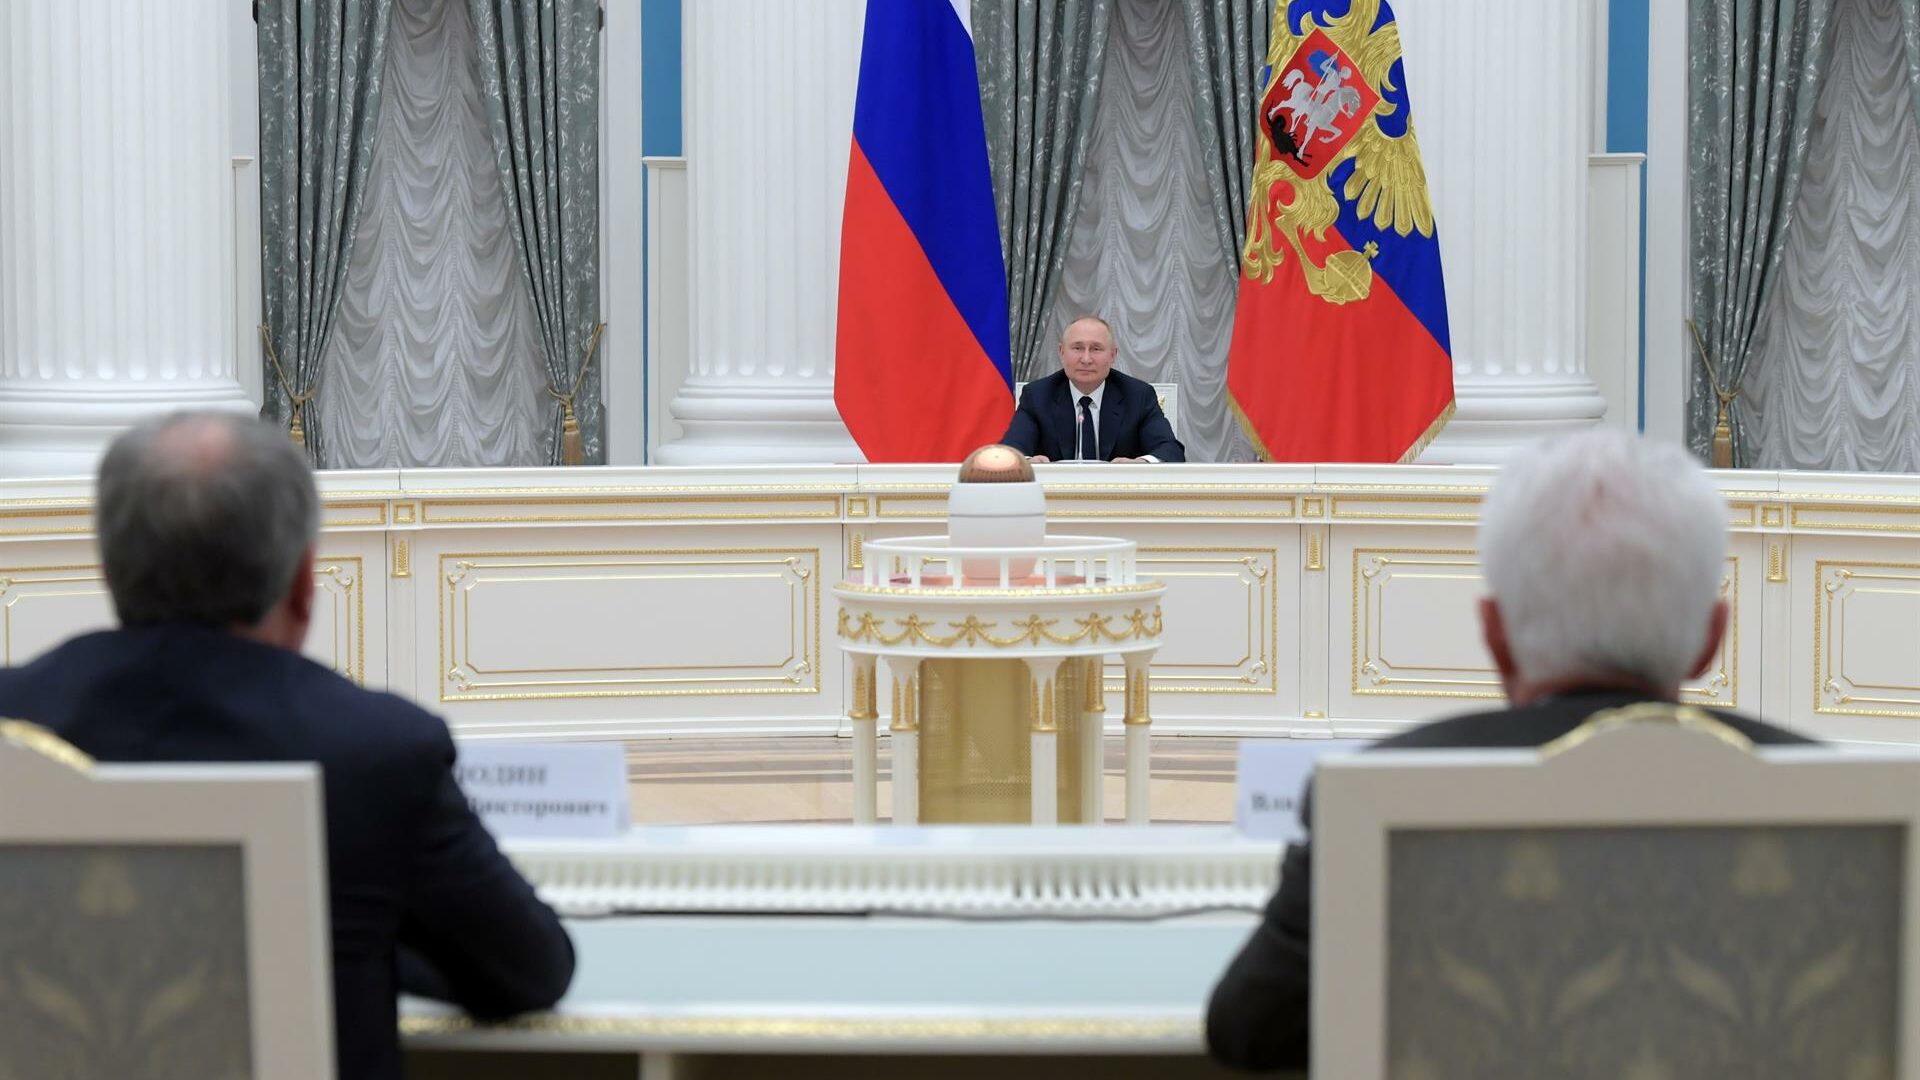 Última hora de la guerra en Ucrania, en directo: Putin amenaza con que Rusia aún no ha iniciado "nada serio"